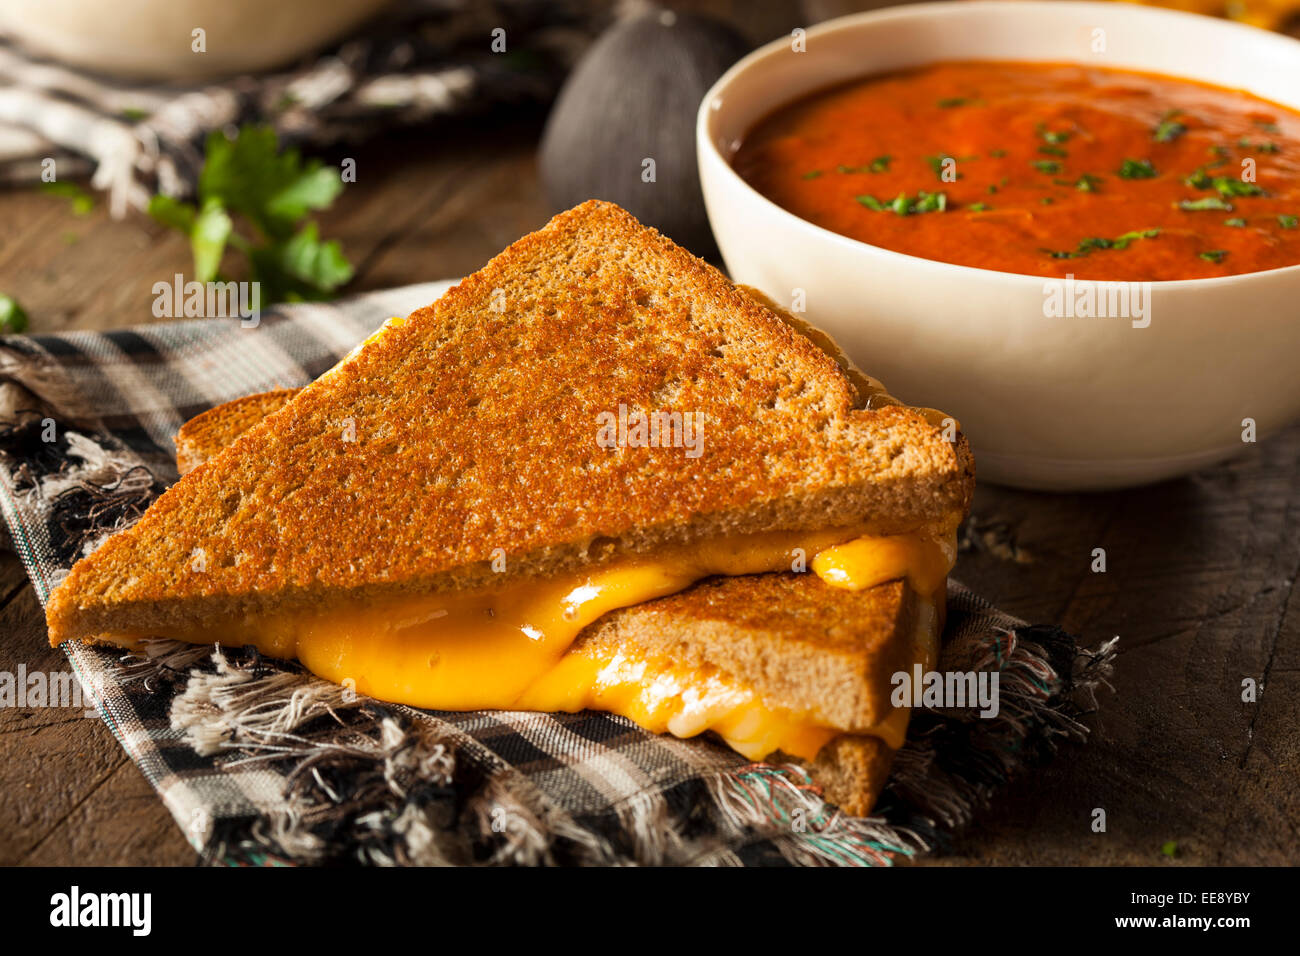 Au fromage fait maison avec soupe de tomate pour le déjeuner Banque D'Images